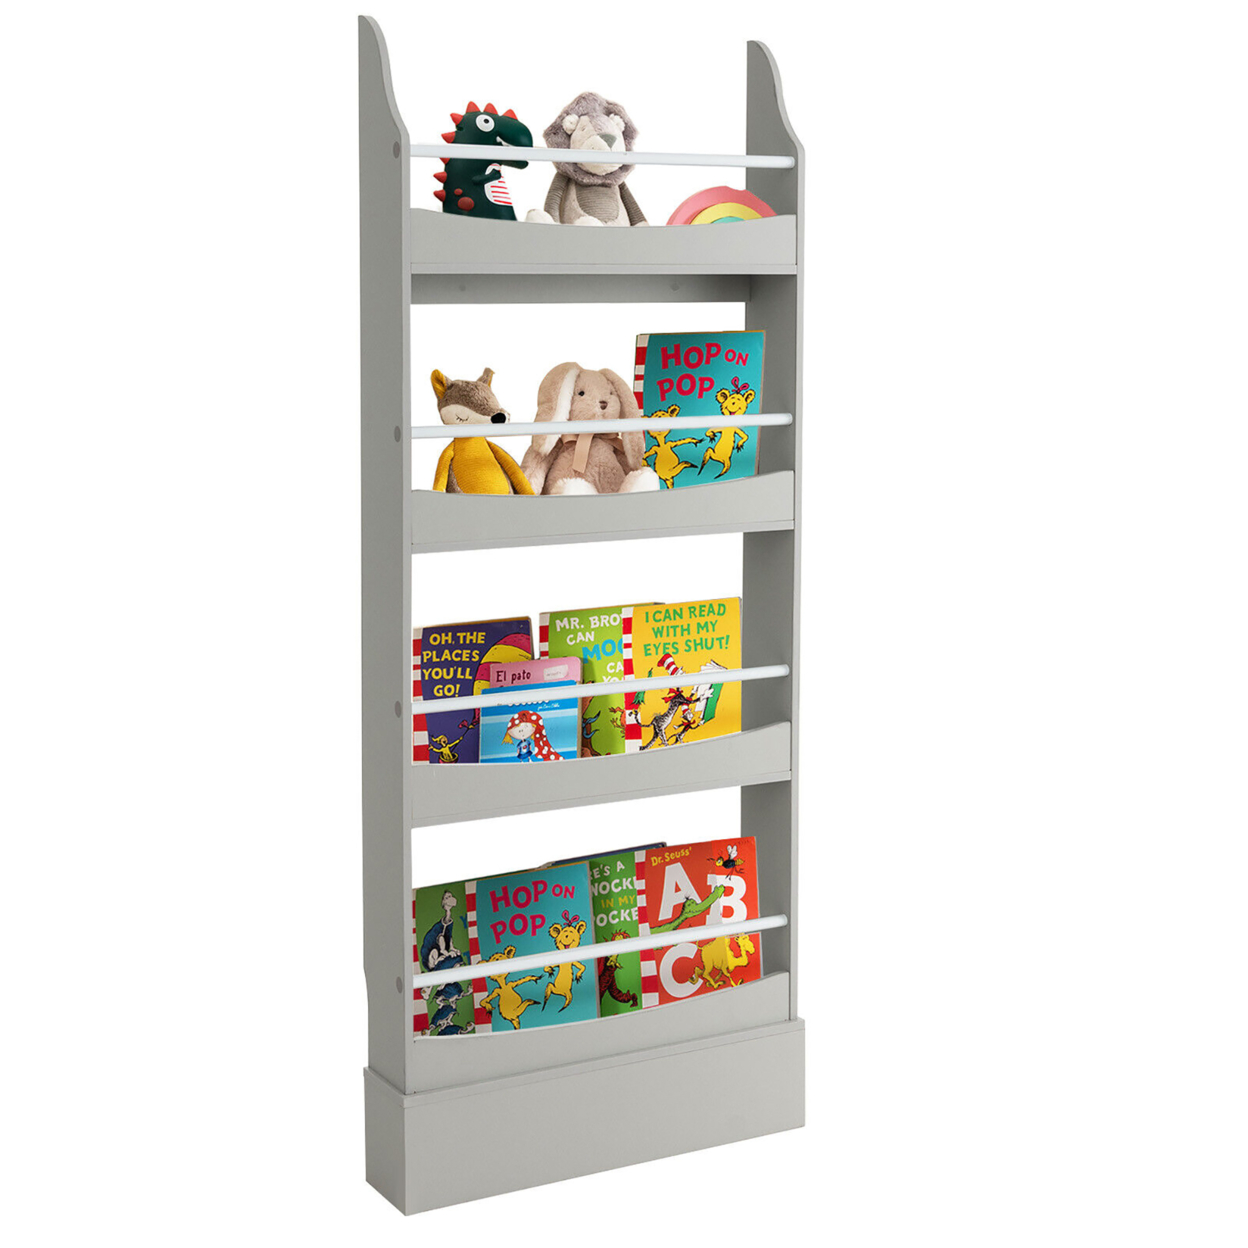 4-Tier Kids Bookshelf Toy Storage Bookcase Rack Wall W/ Anti-toppling Kits - Grey